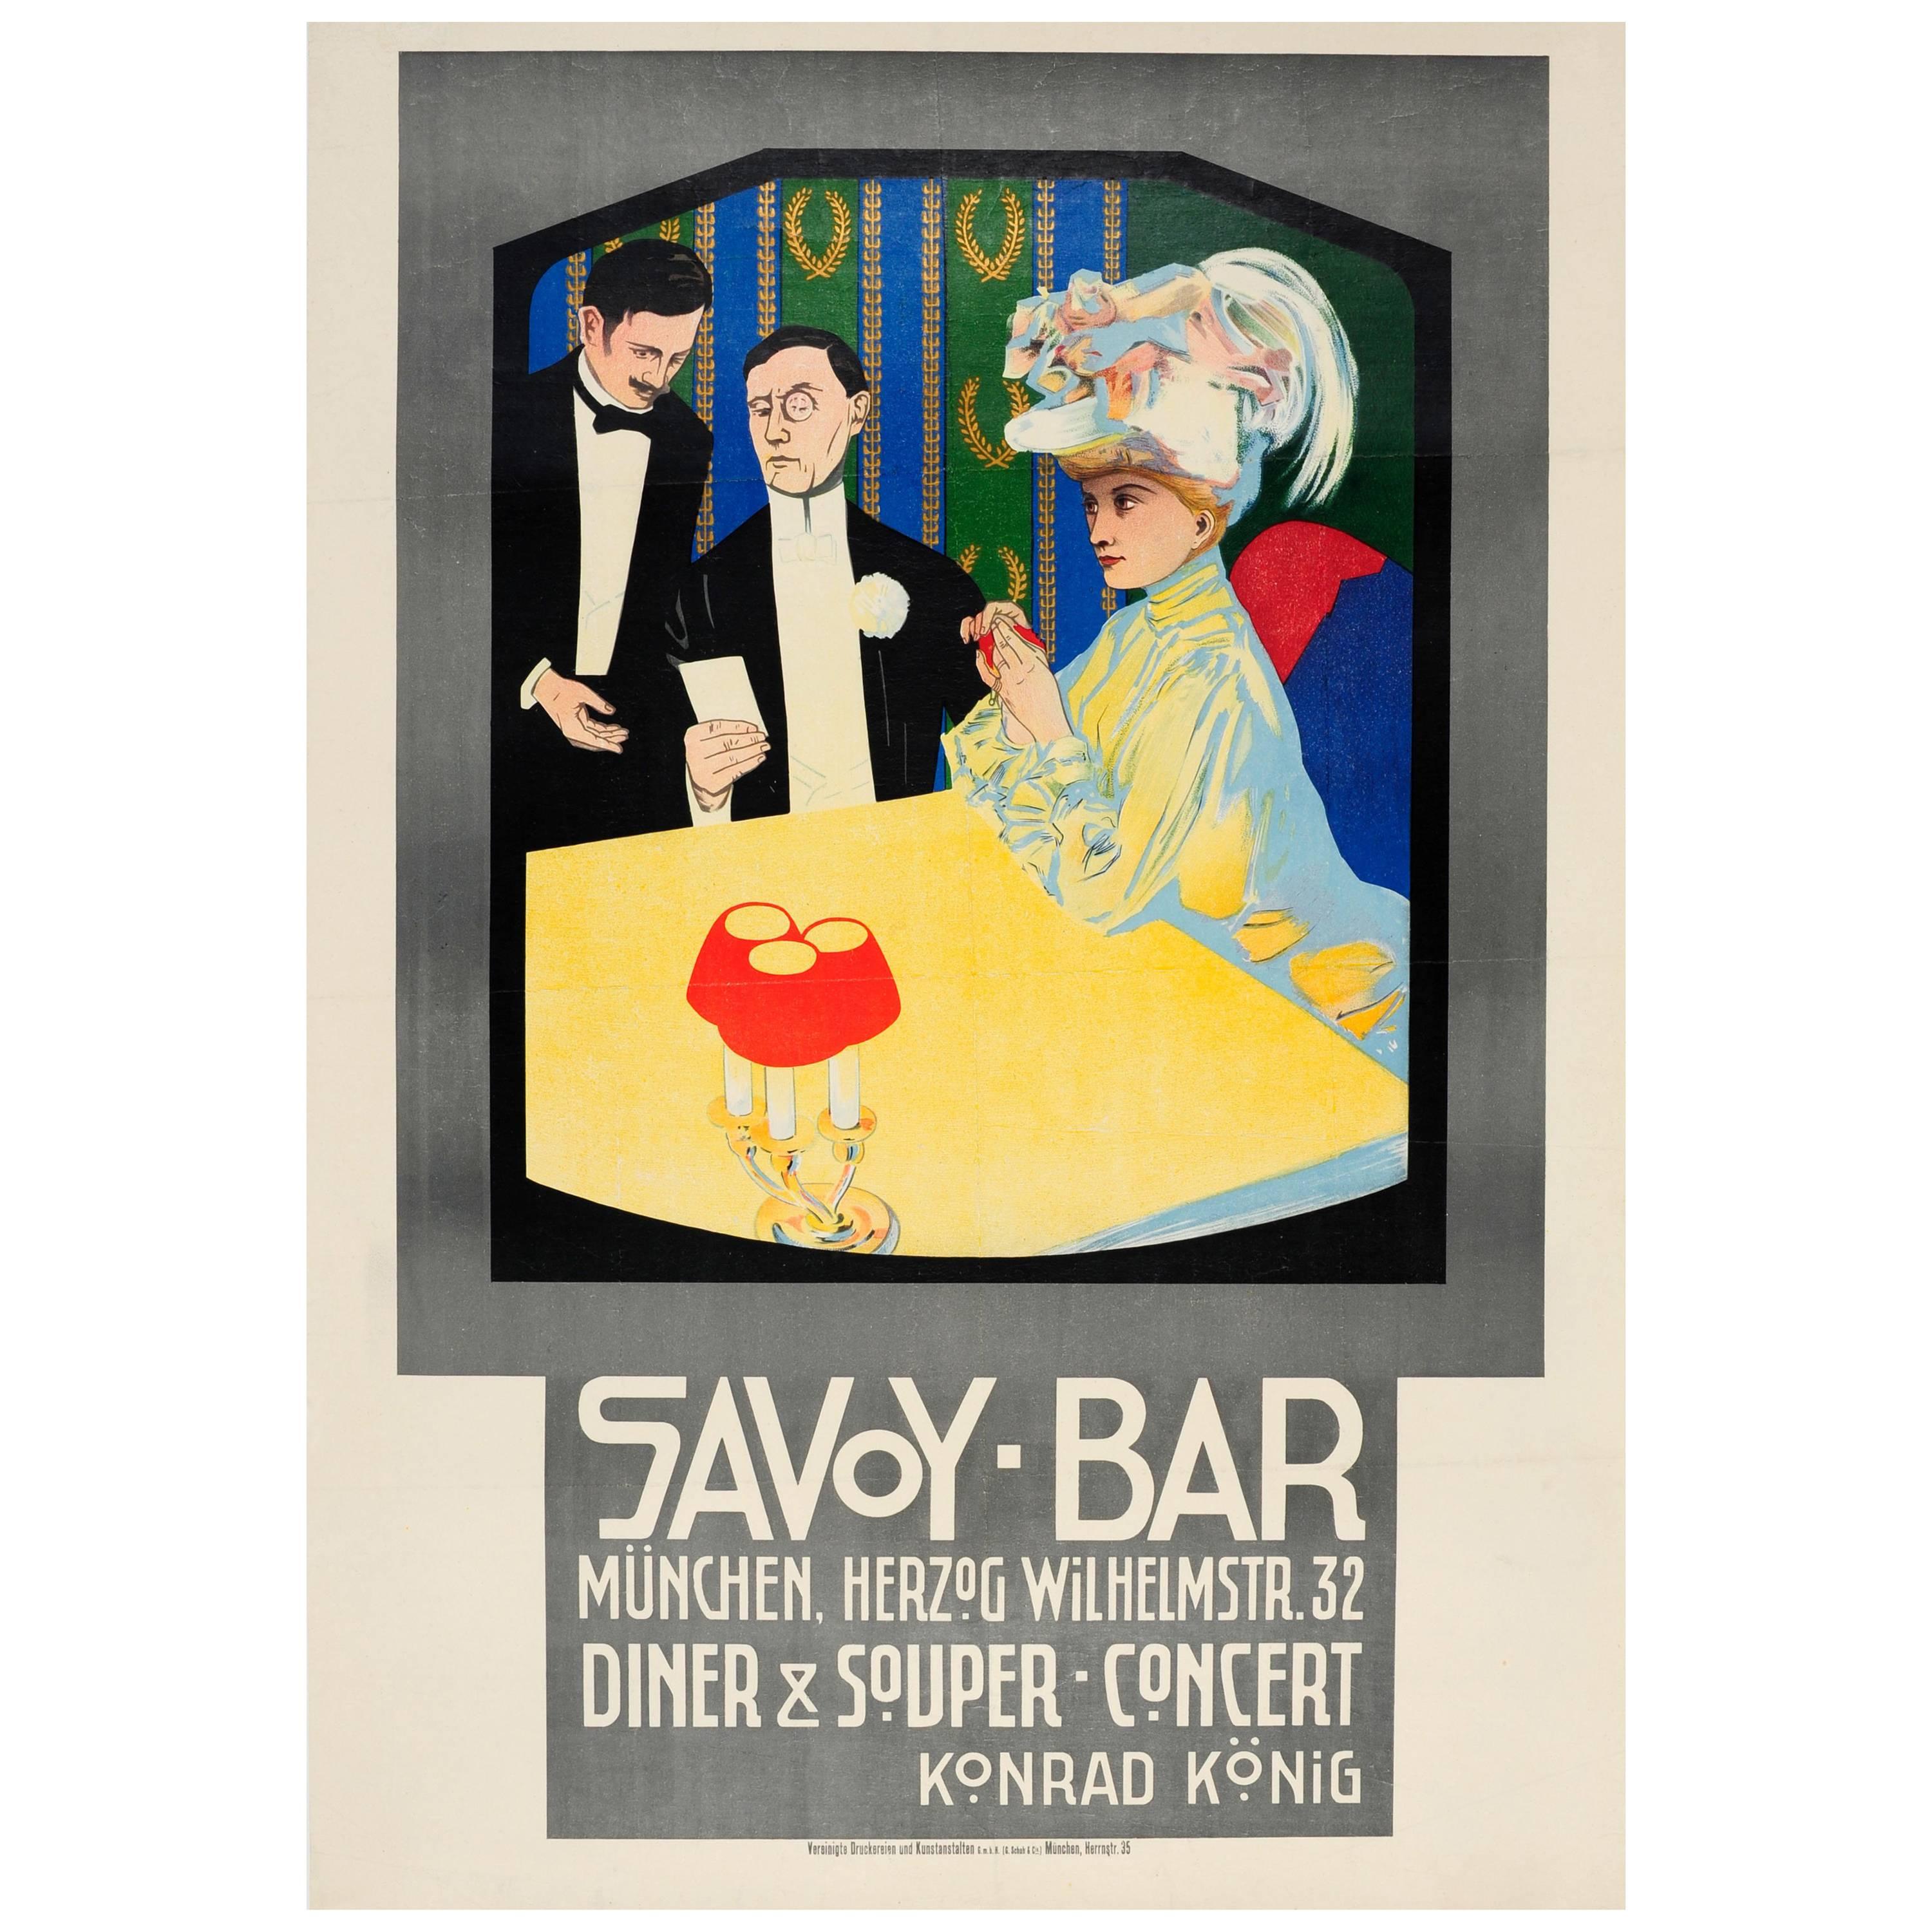 Original Antique Poster for a Dinner Concert at the Savoy Bar Munchen / Munich